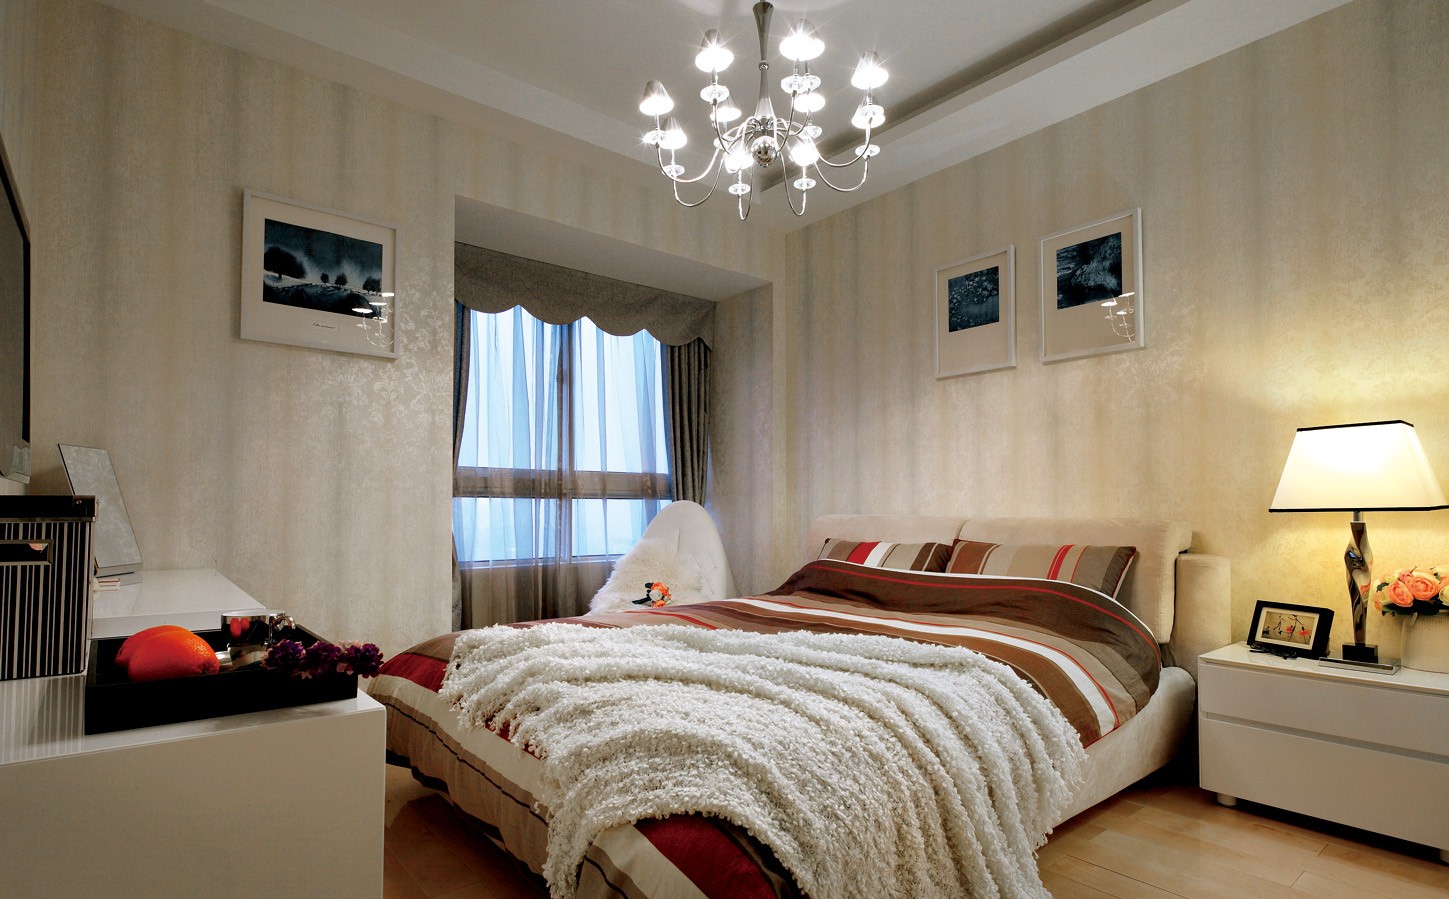 二居室装修,110平米装修,10-15万装修,现代简约风格,卧室背景墙,暖色调